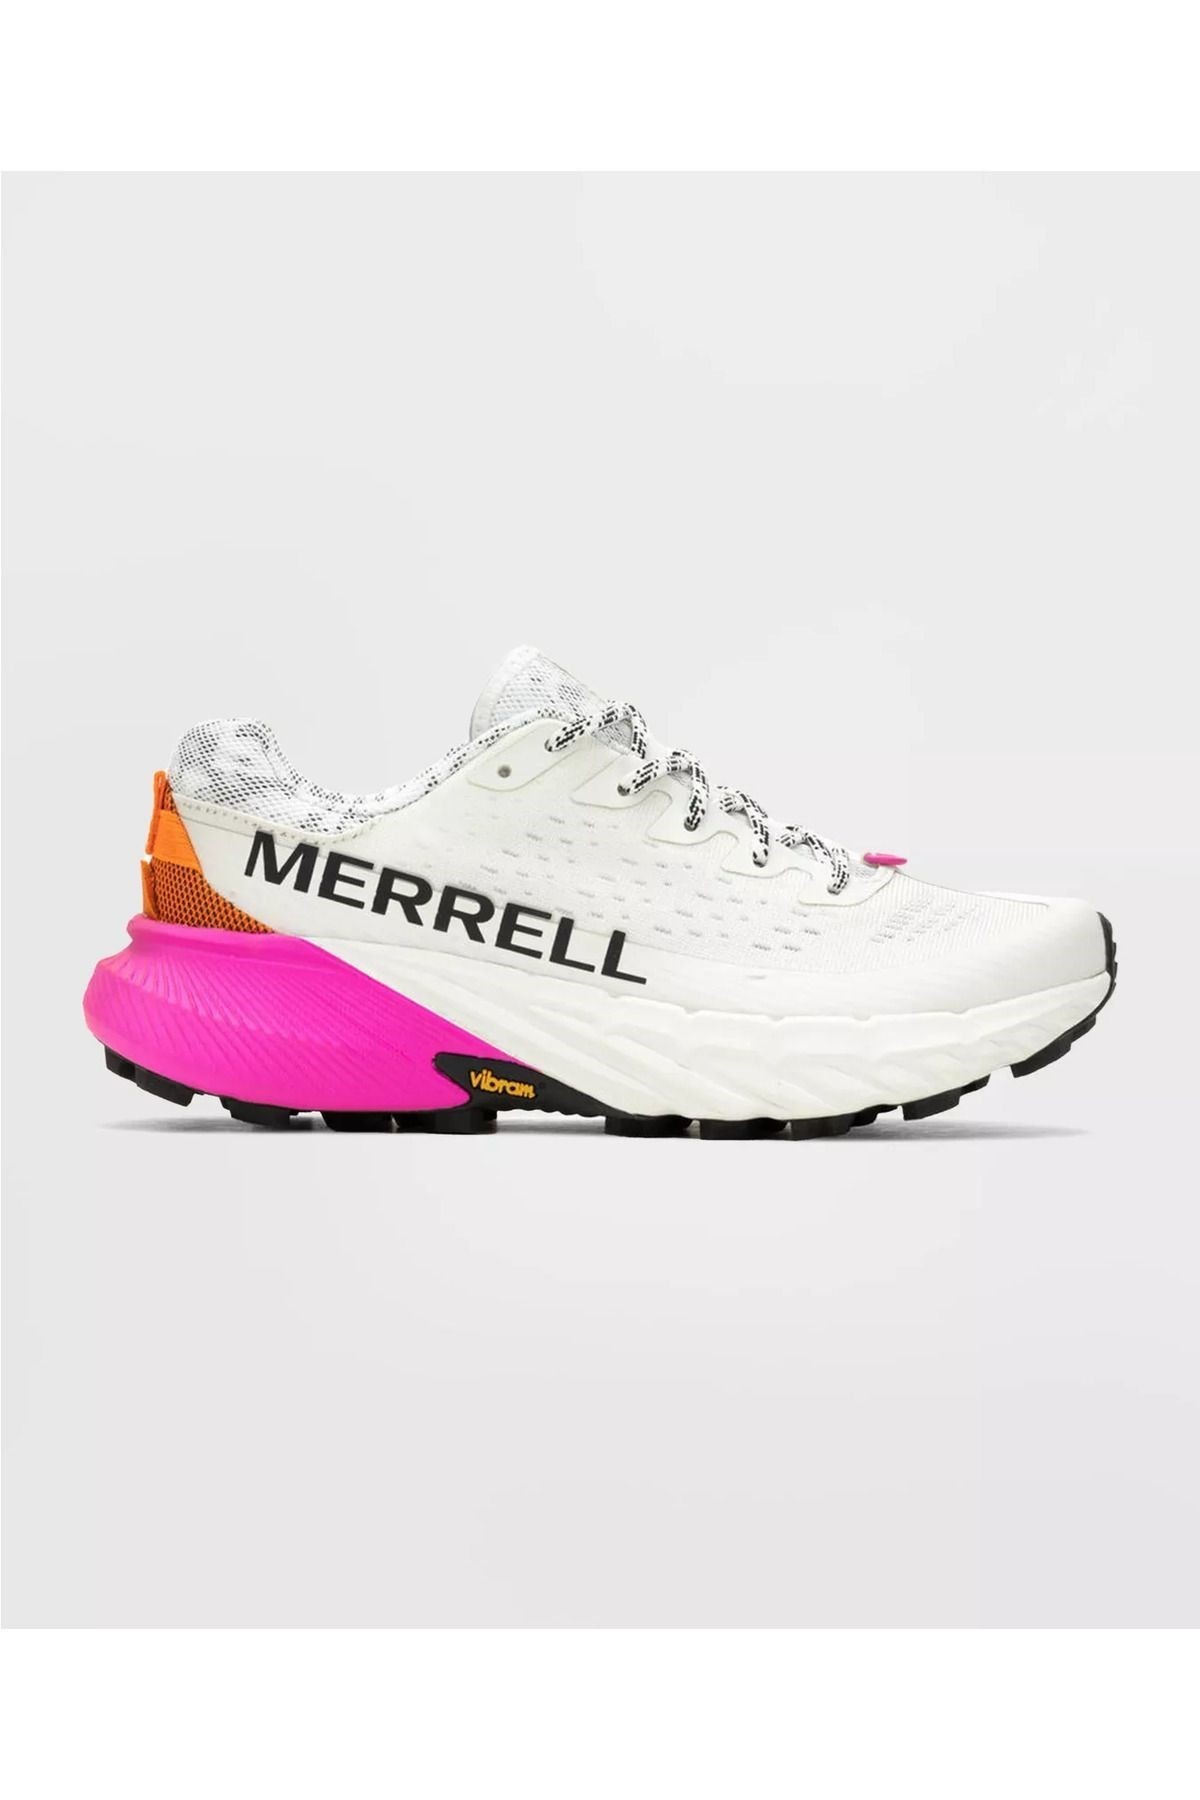 Merrell Kadın Agılıty Peak 5 Patika Koşusu Ayakkabısı Whıte/multı J068234